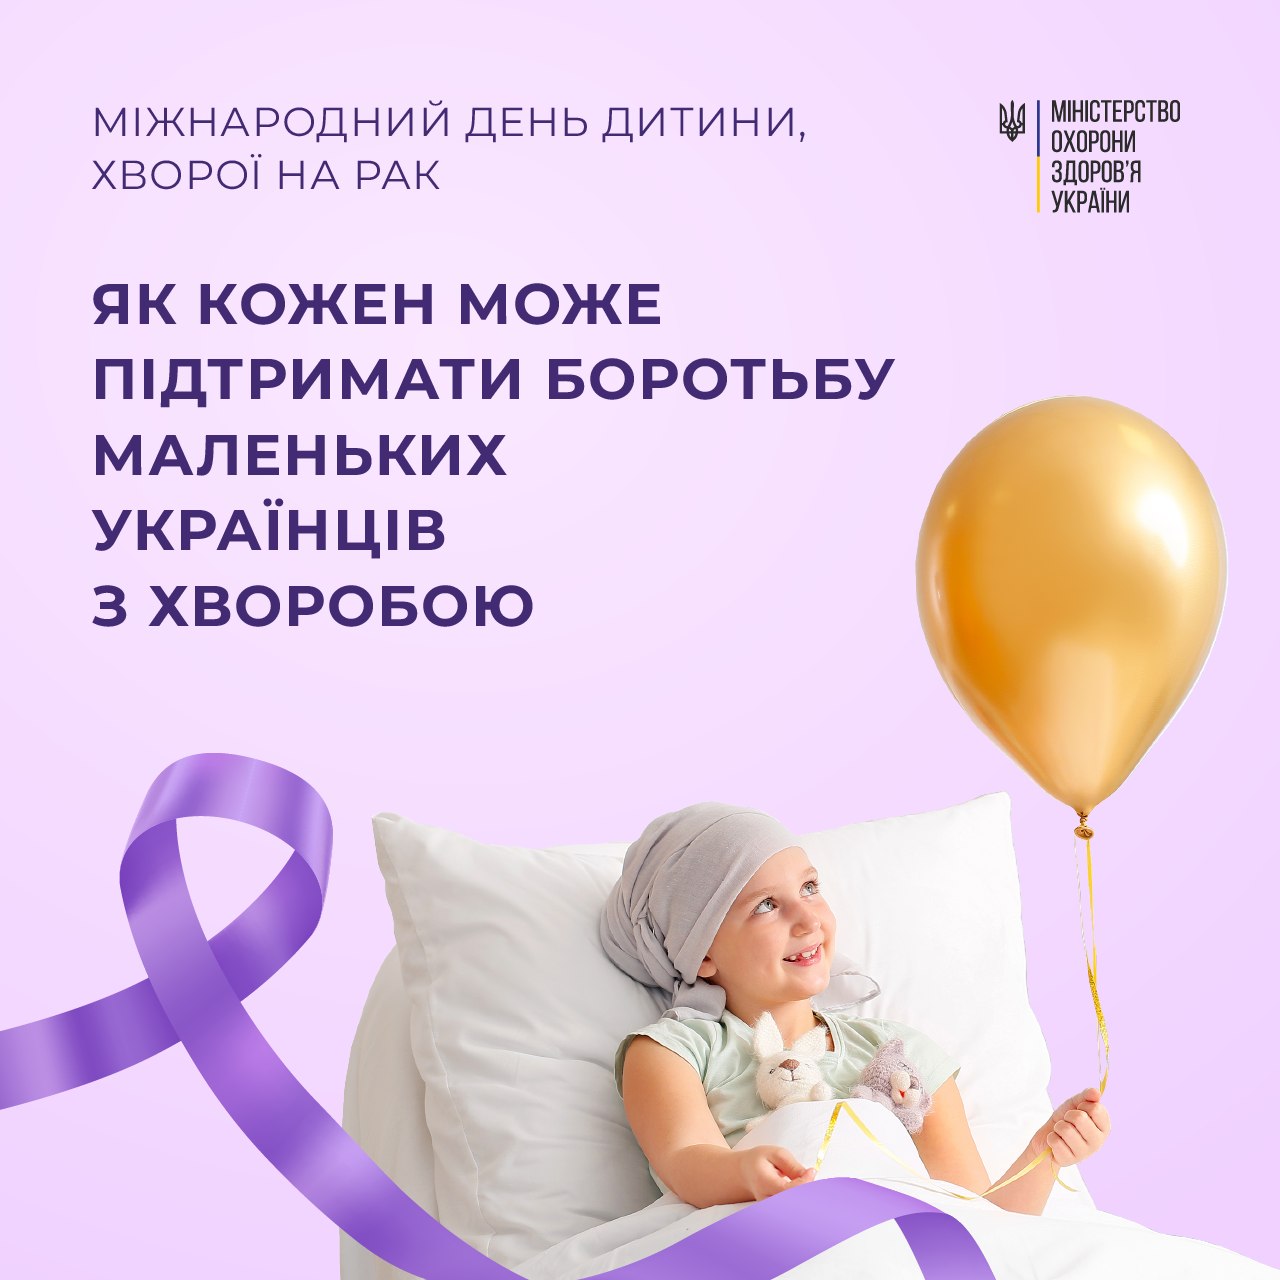 15 лютого – Міжнародний день дитини, хворої на рак